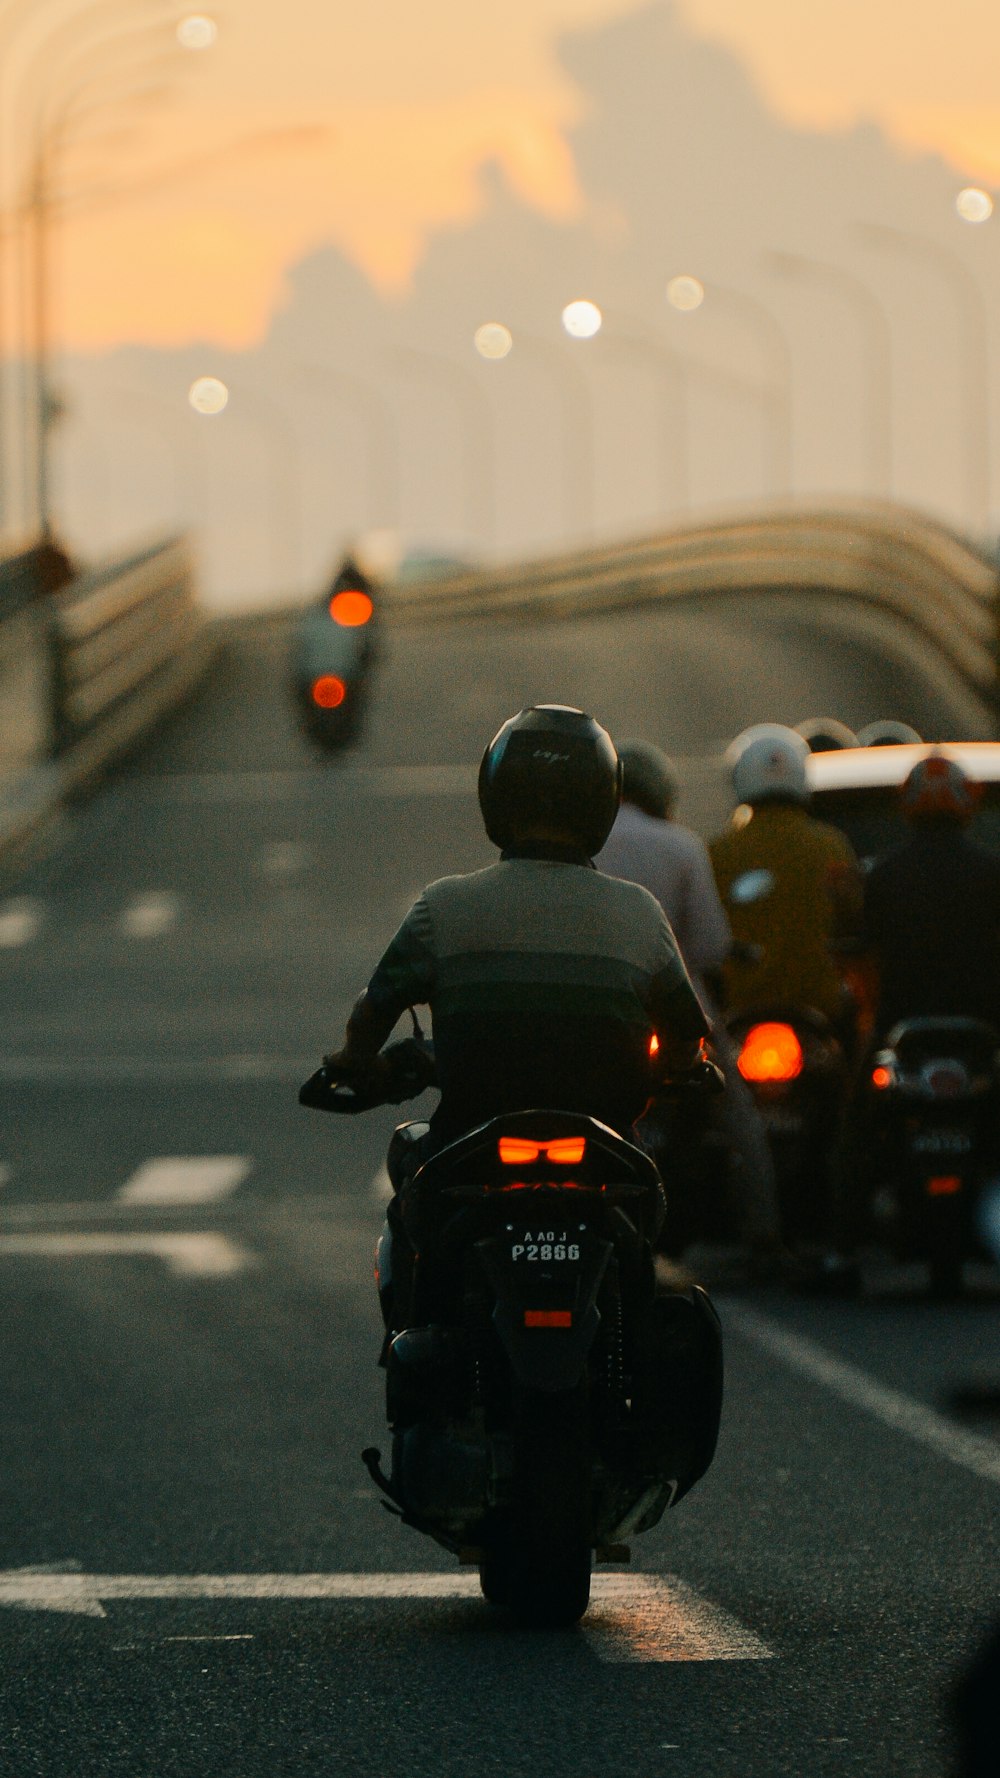 un groupe de personnes conduisant des motos sur une autoroute